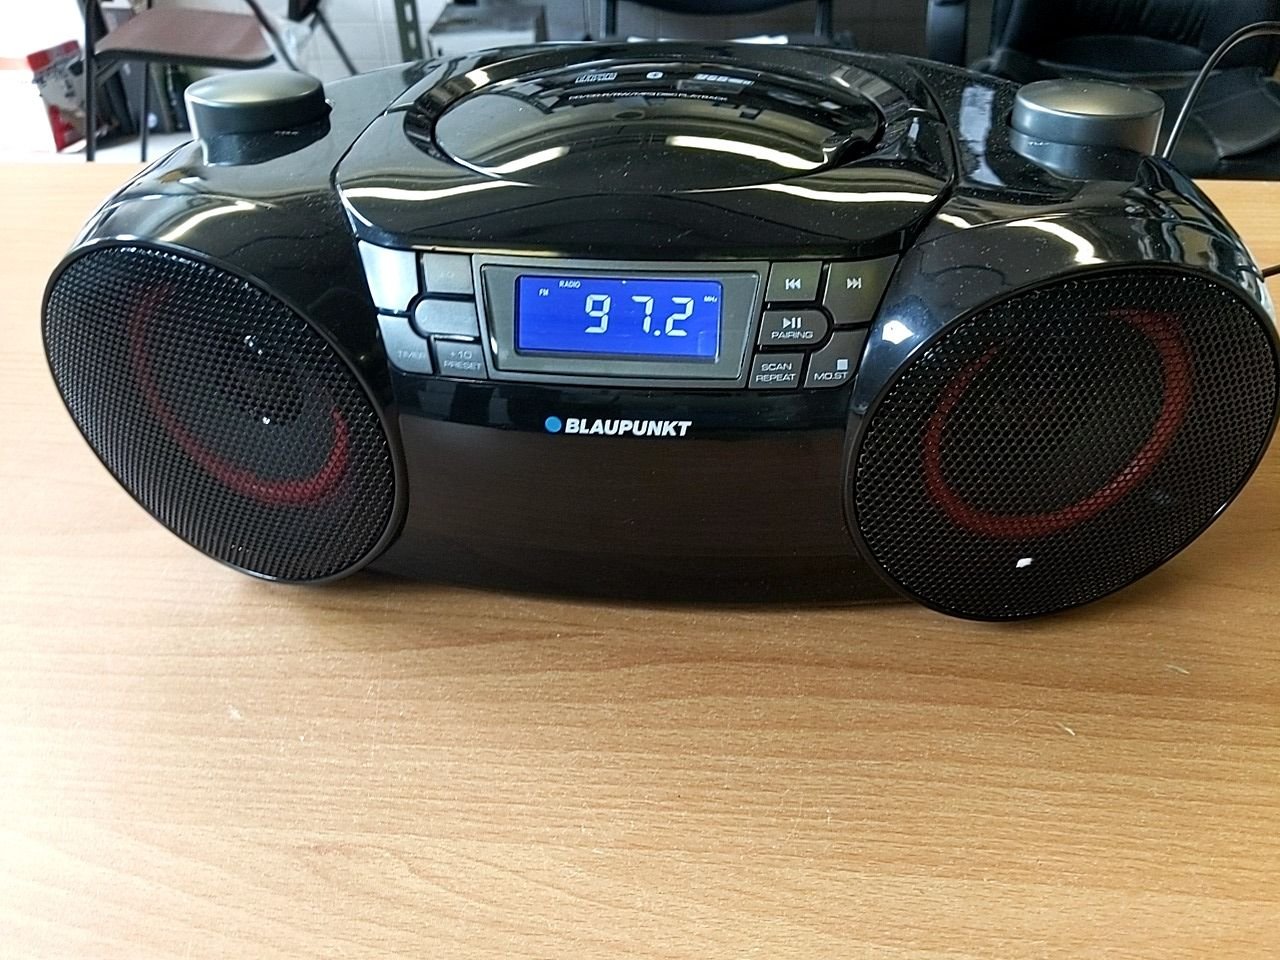 Přenosné radio s CD/USB/SD/BT Blaupunkt BoomBox BB30BT